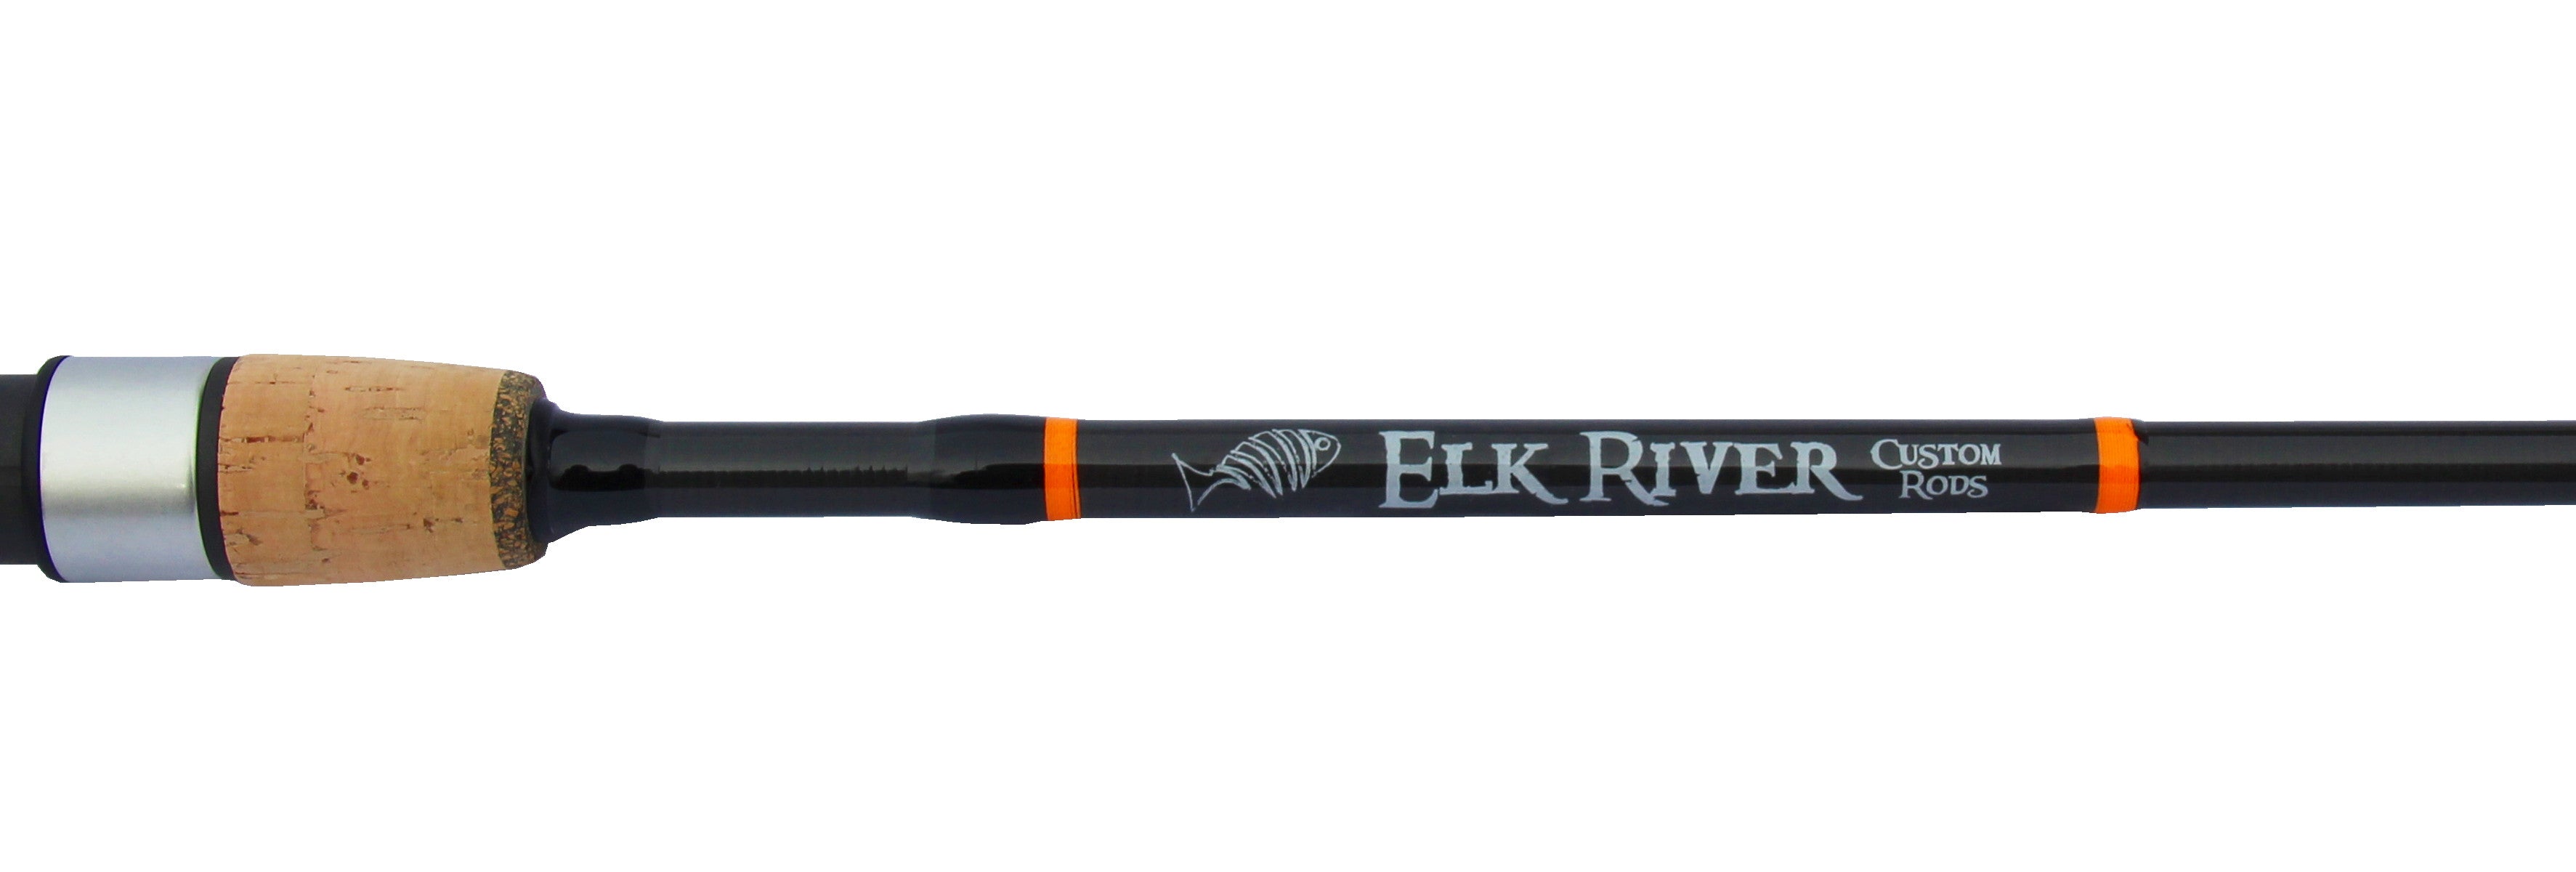 GT Series – Tagged Split Grip – Elk River Custom Rods